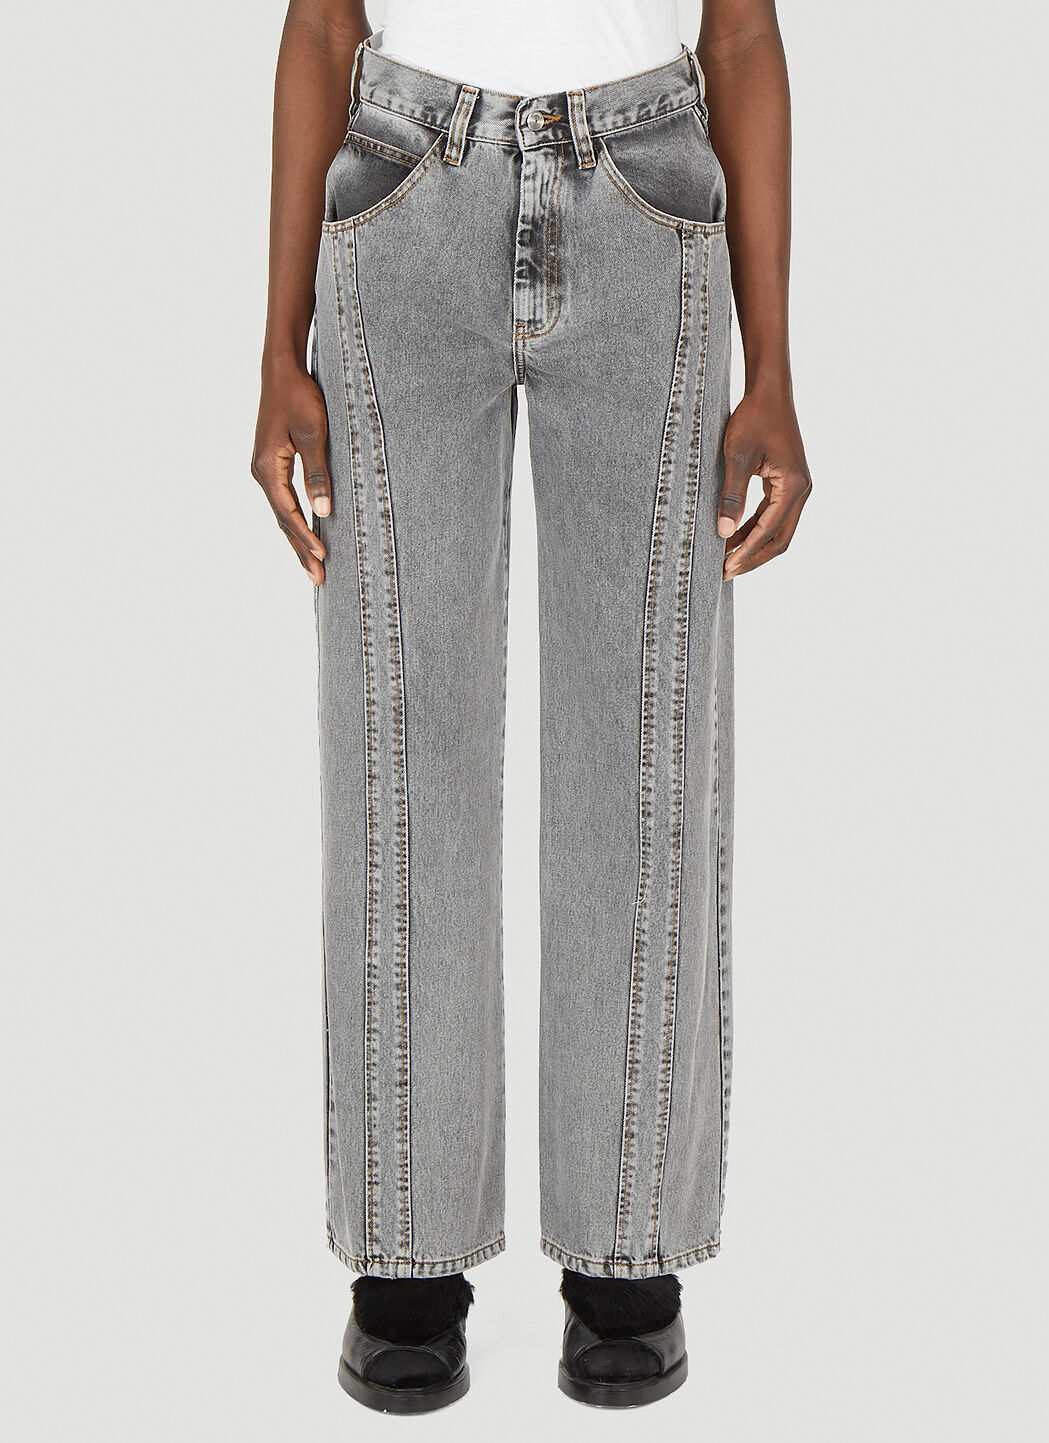 Namacheko Ashack Jeans in Grey | LN-CC®